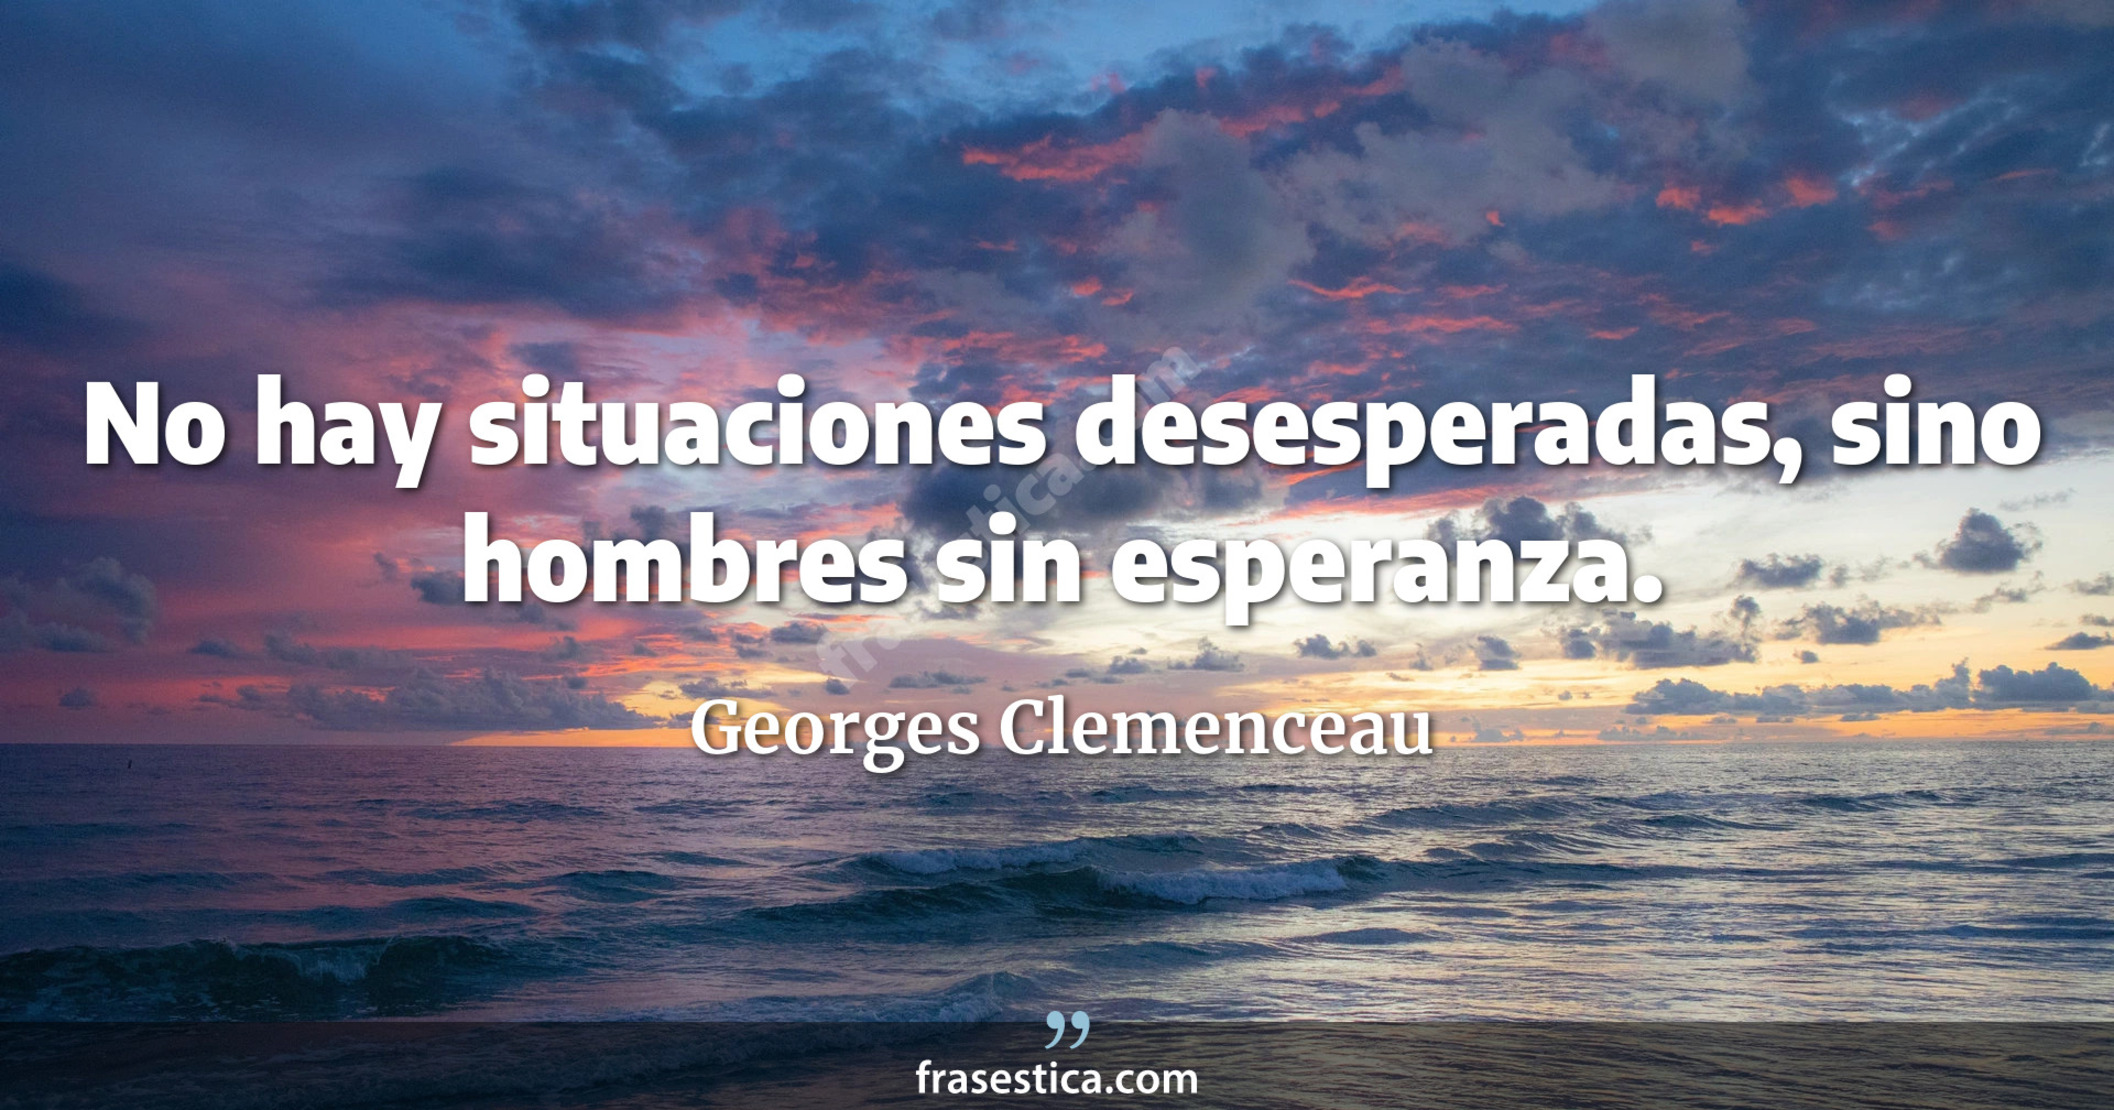 No hay situaciones desesperadas, sino hombres sin esperanza. - Georges Clemenceau